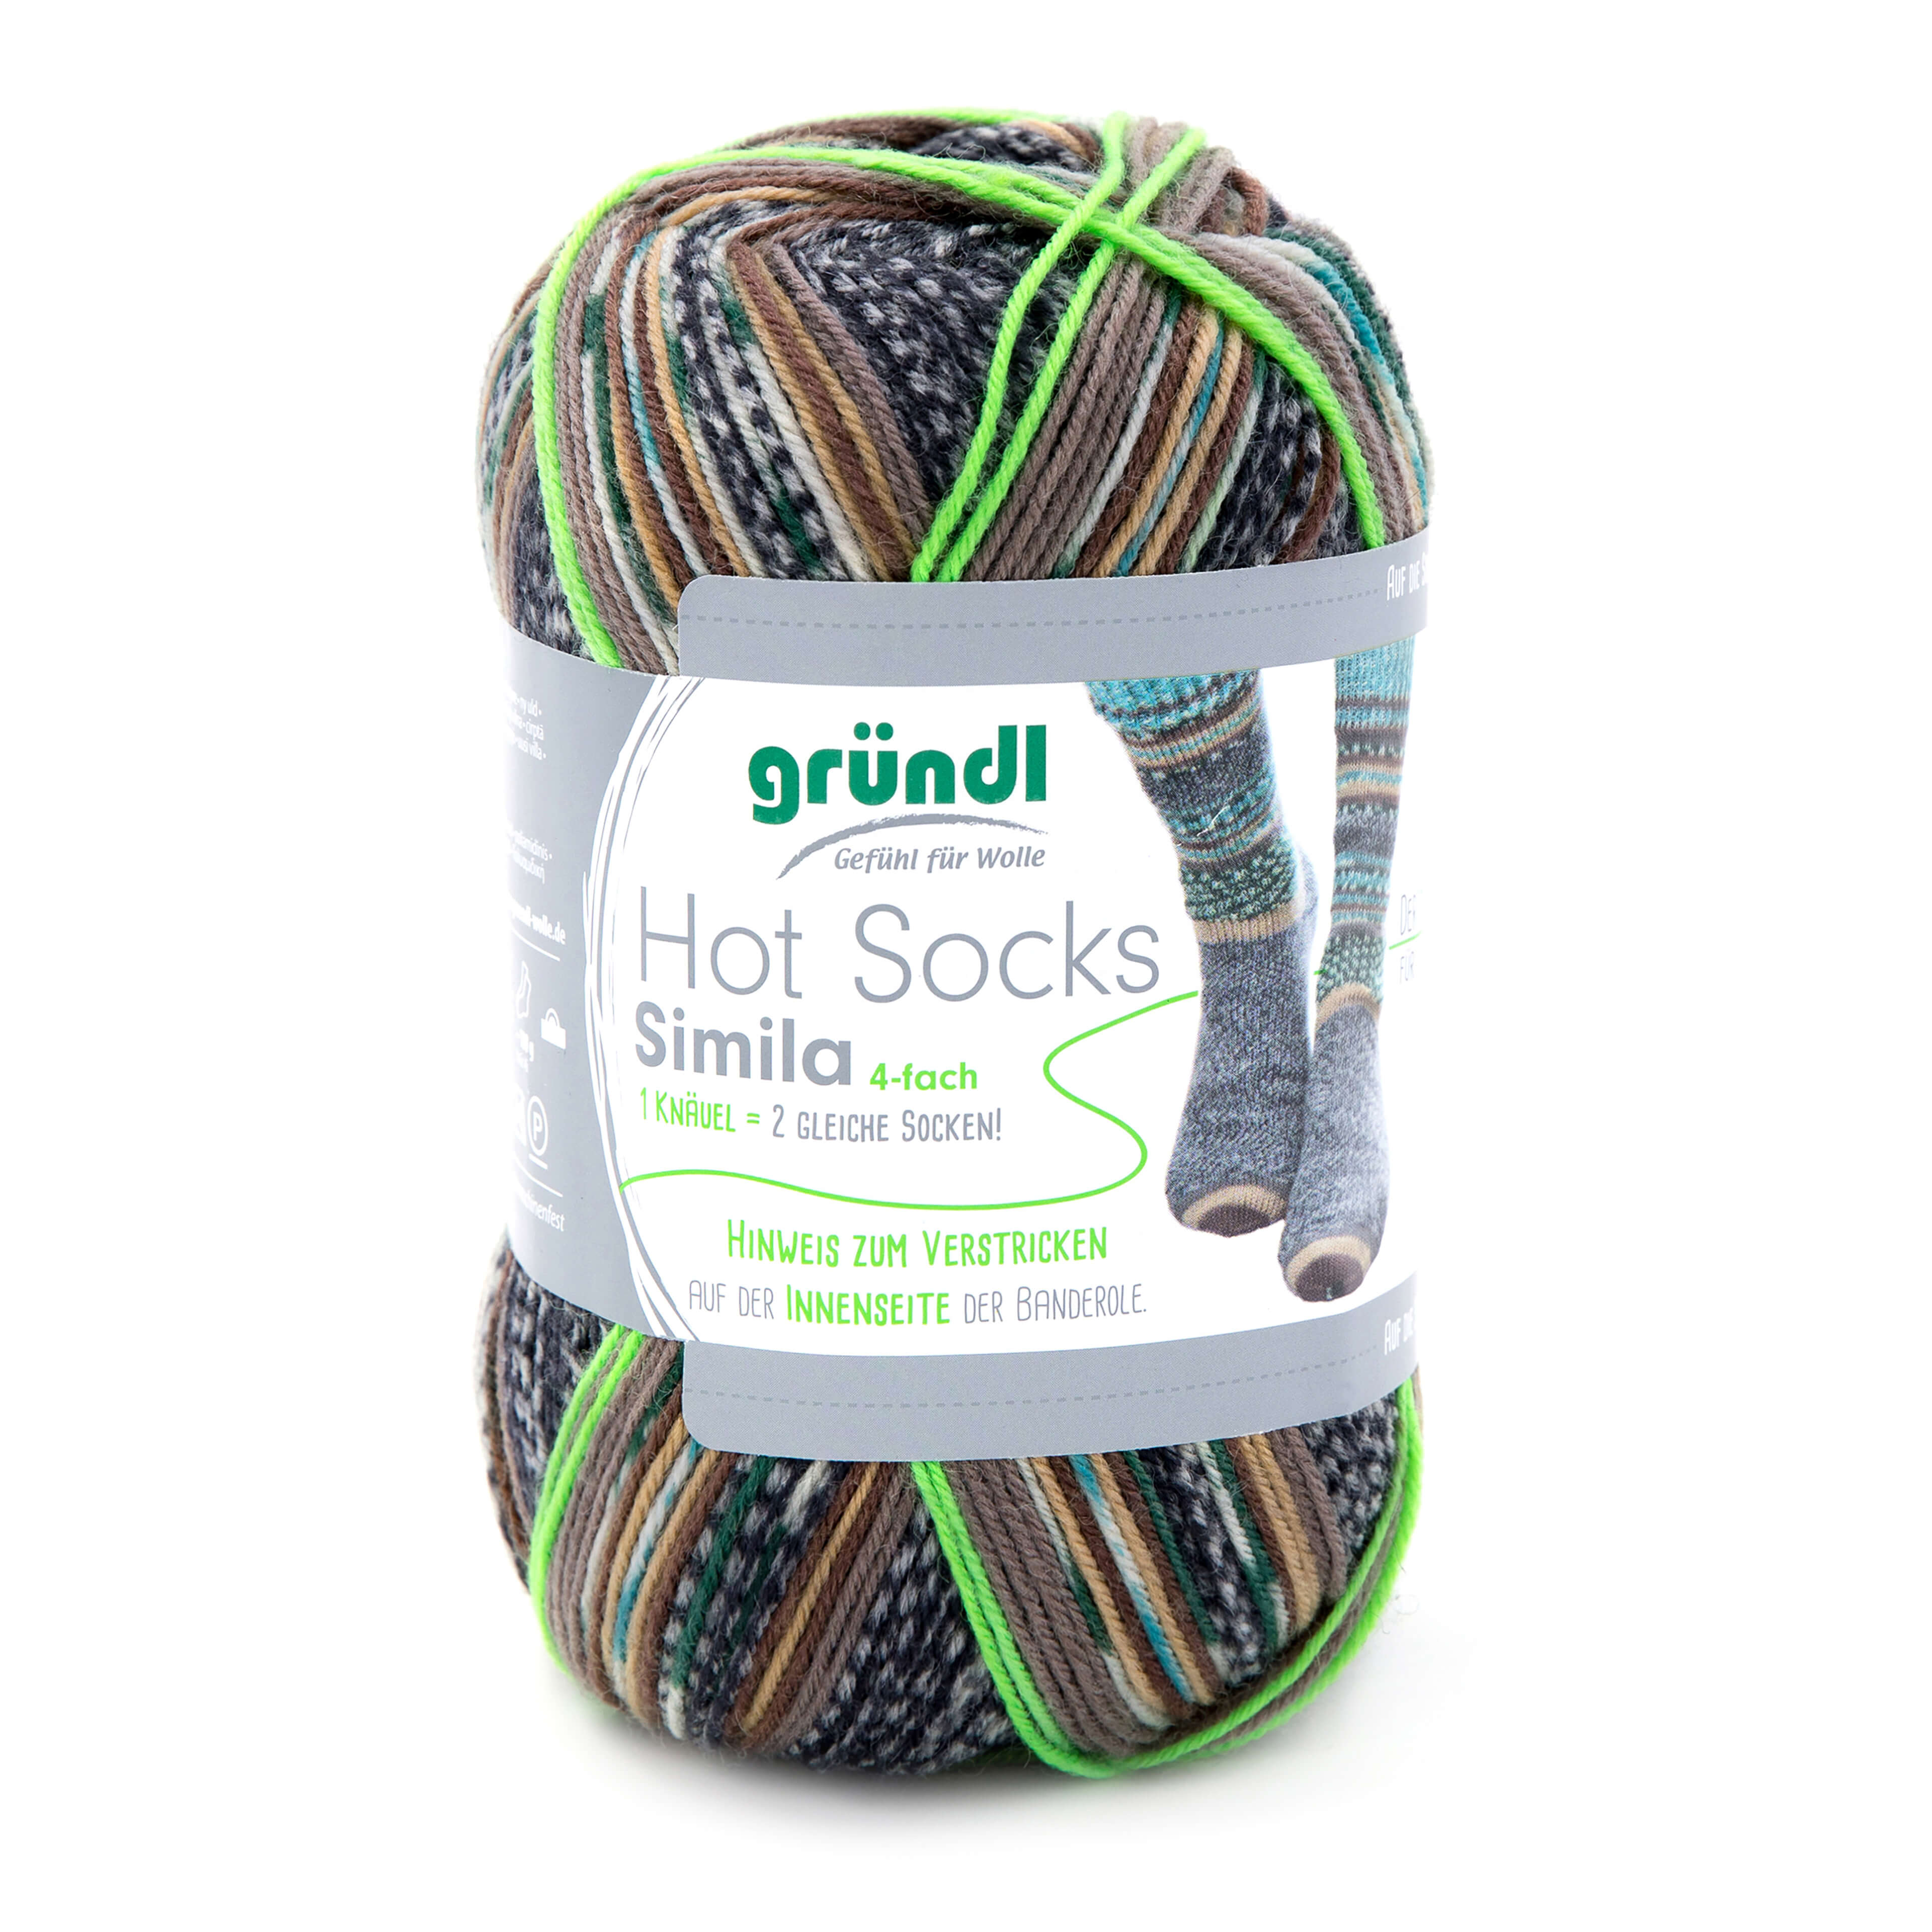 Hot Socks Simila